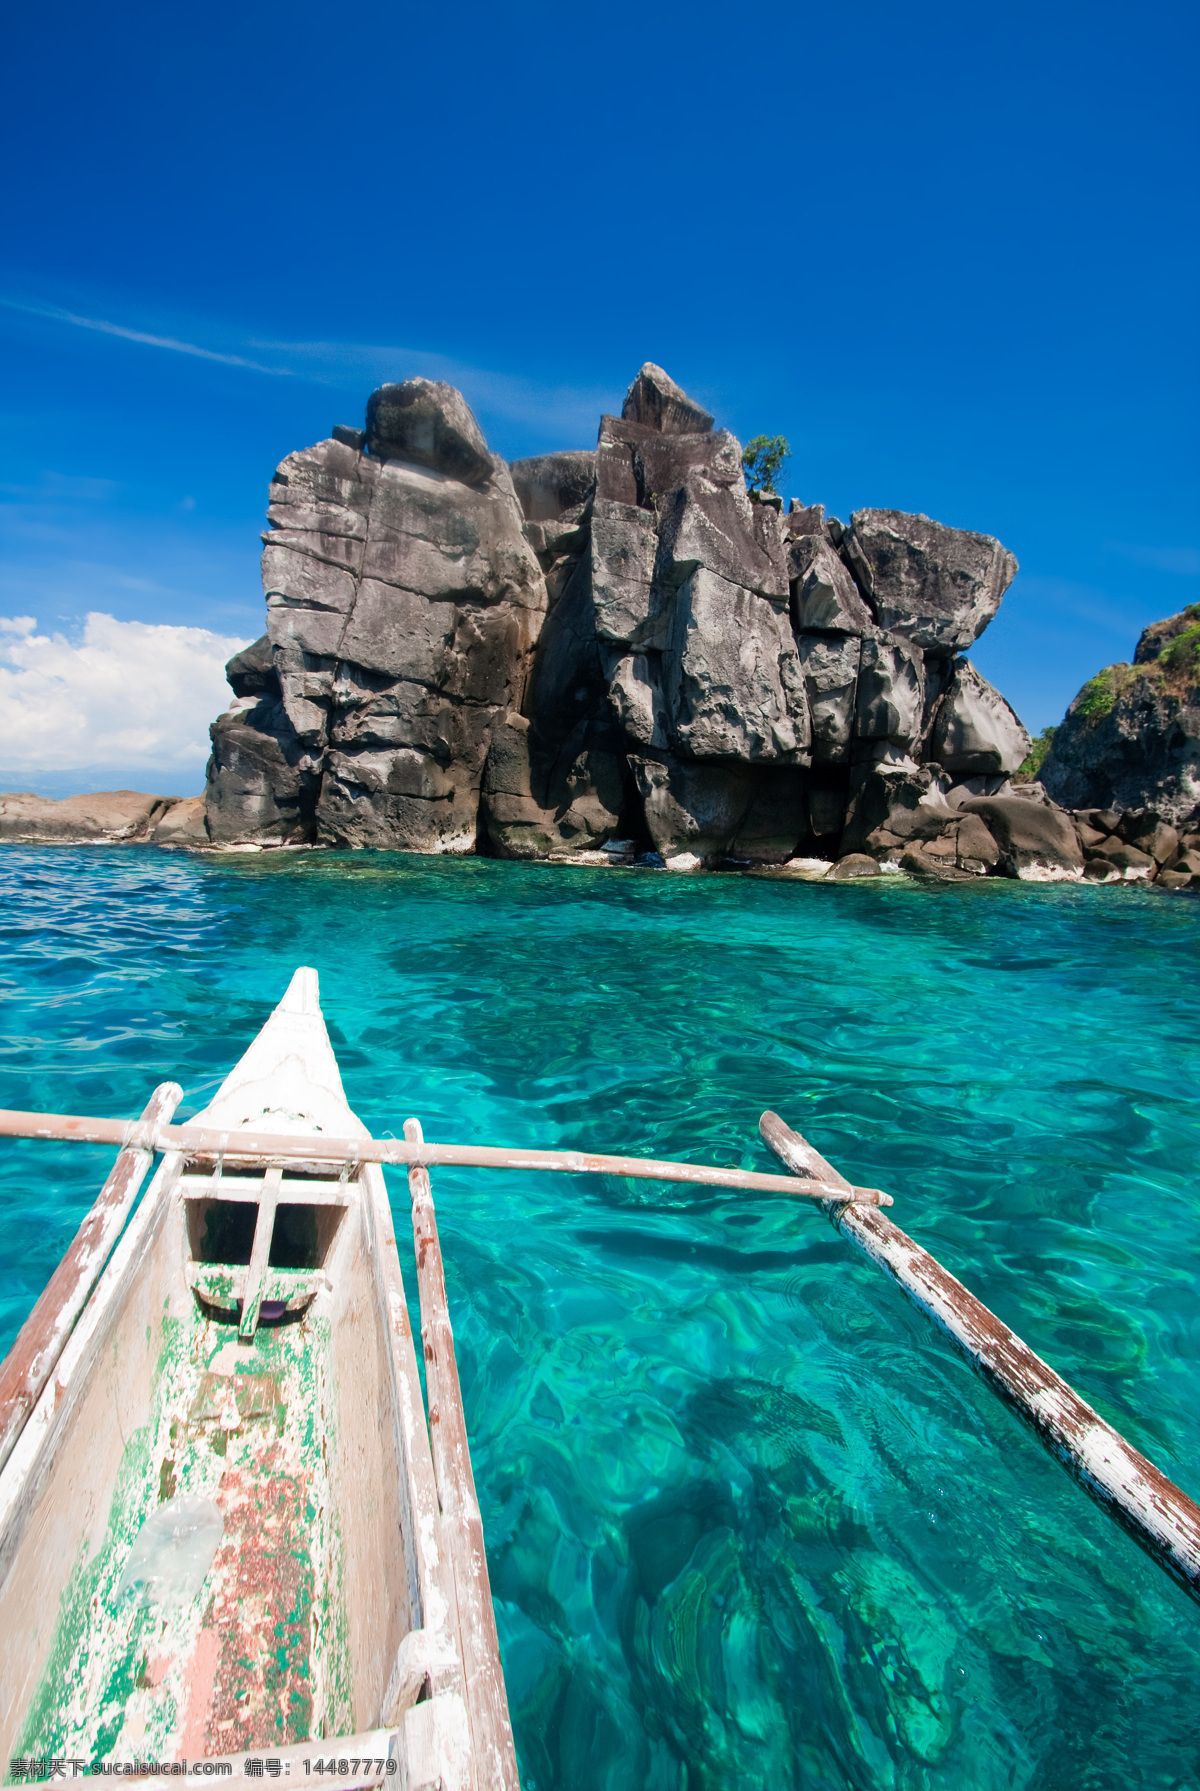 菲律宾 保和 岛 度假 旅游风景 菲律宾保和岛 旅游 风景 bohol 薄荷岛 沙滩 海边 海洋 蓝天白云 悬崖峭壁 绝美 世外桃源 度假胜地 自然风景 旅游摄影